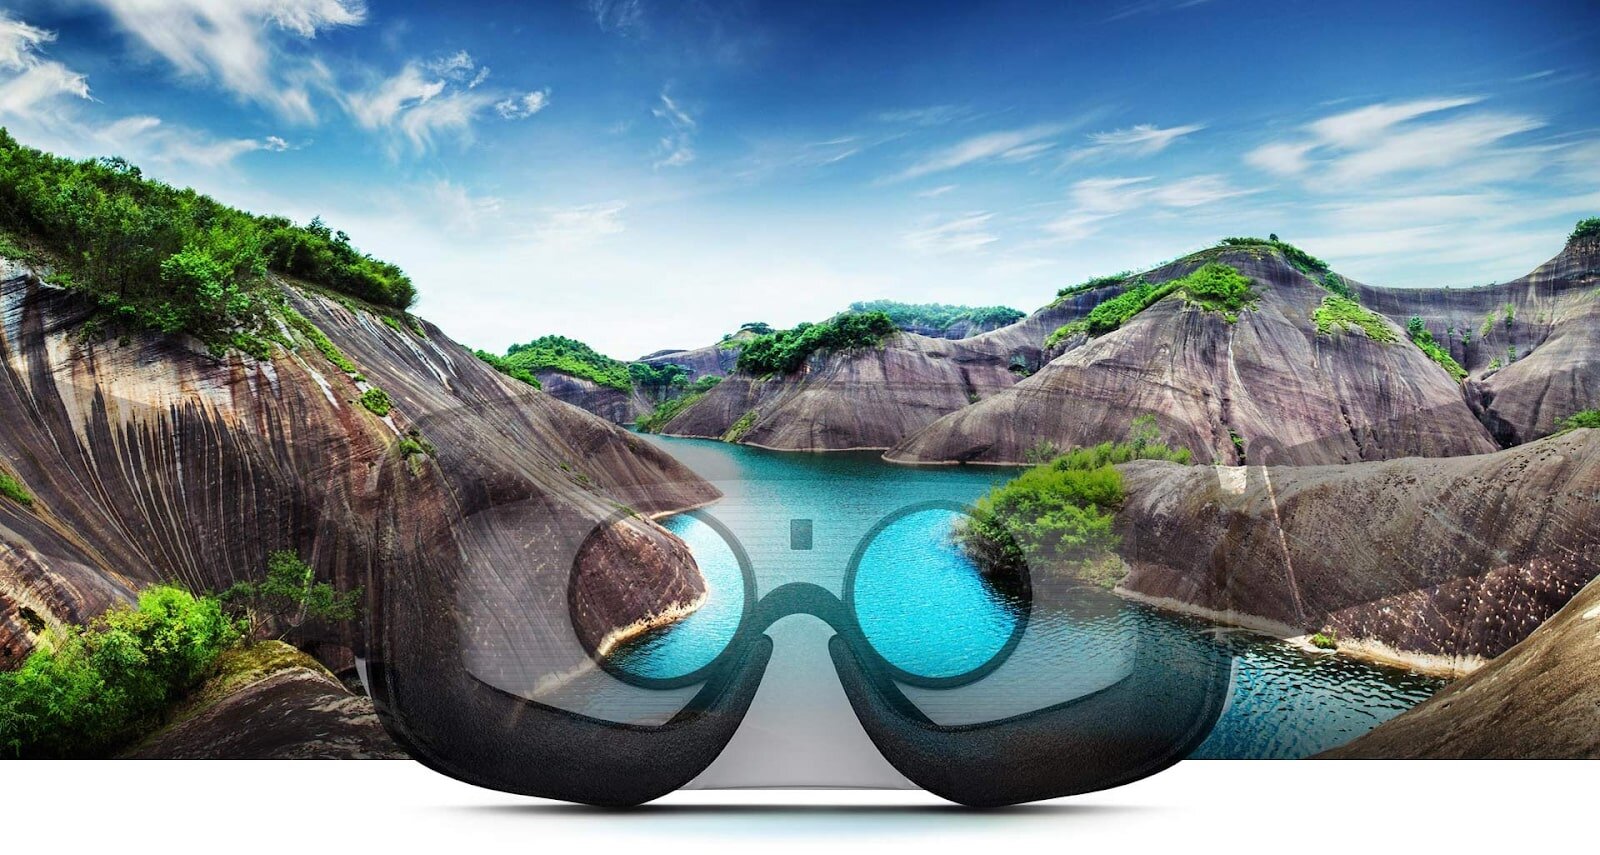 Đeo kính VR bạn sẽ được trải nghiệm đi đến điểm du lịch thực tế 